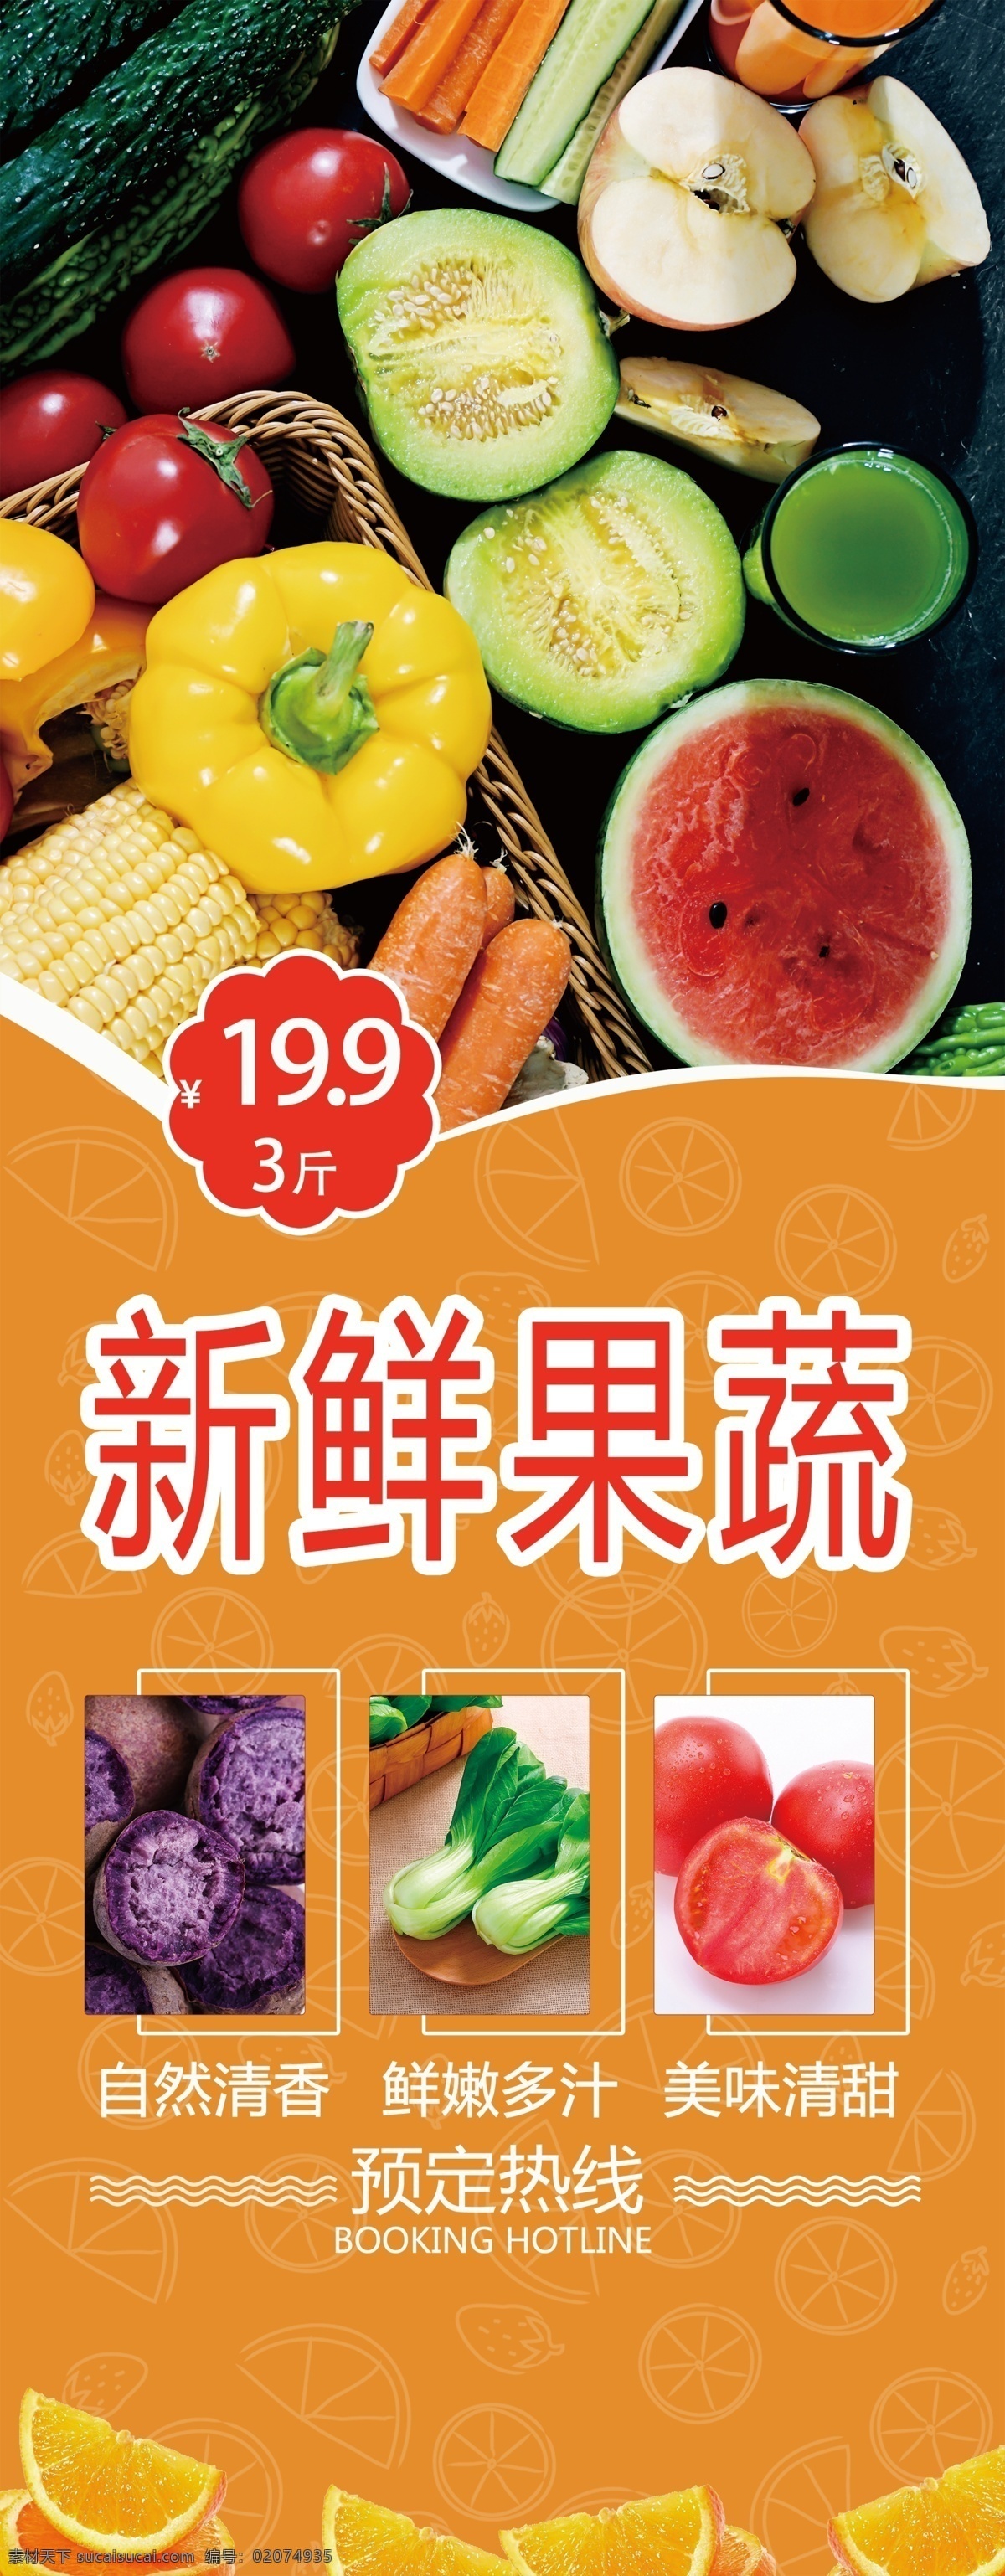 新鲜 果蔬 展架 海报 蔬菜 水果 超市 水果店 促销 优惠 活动 销售 宣传 健康 无公害 展板模板